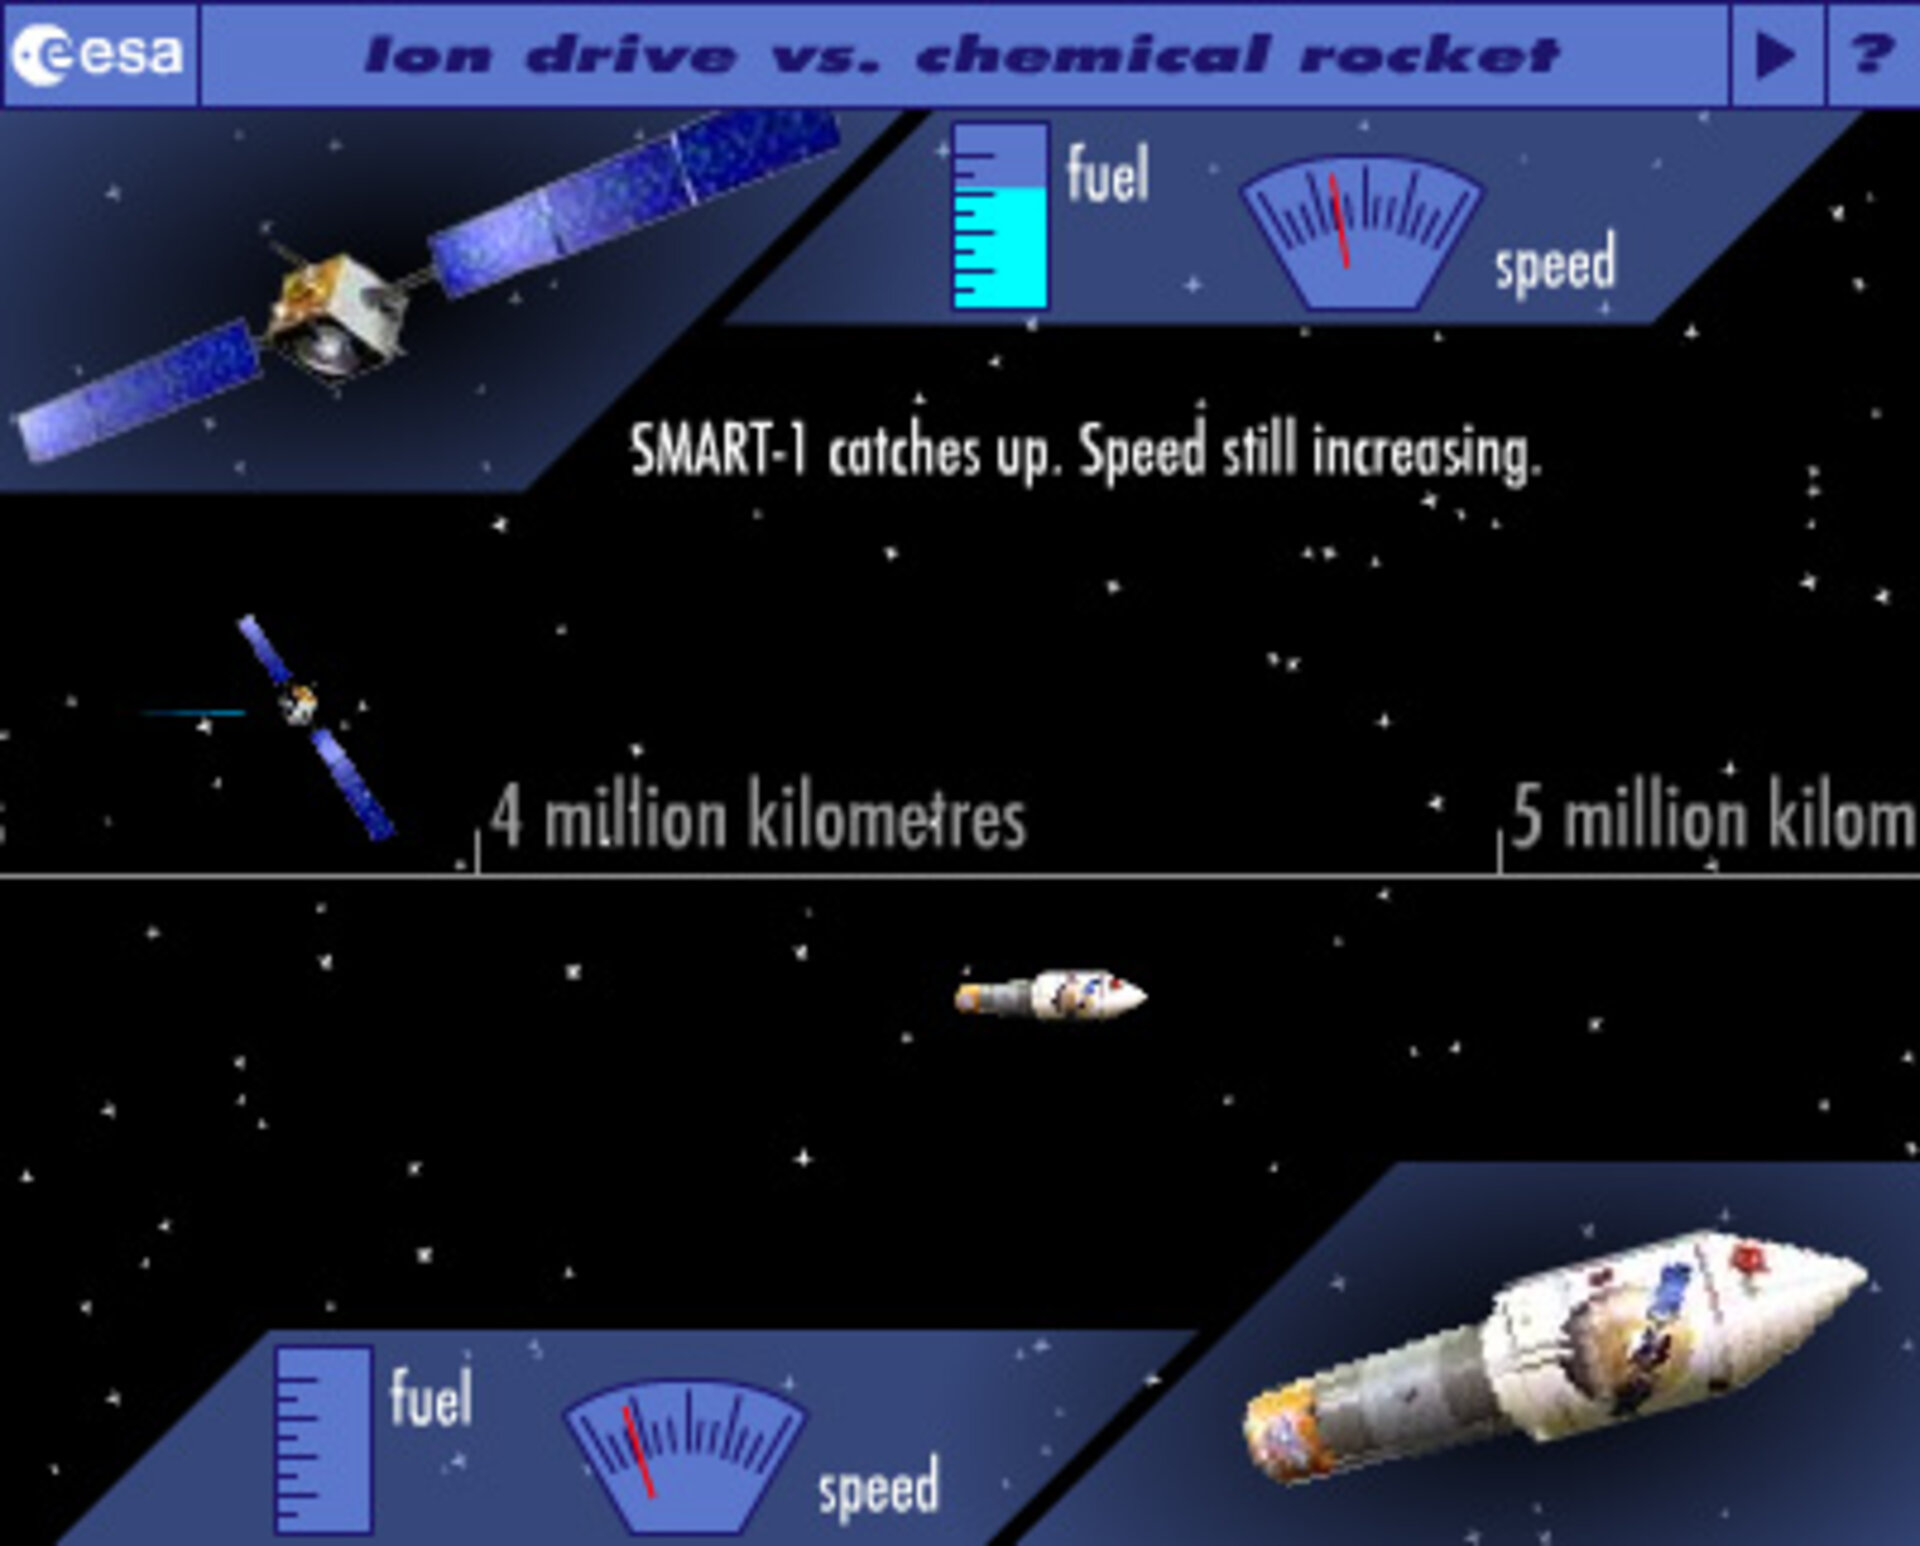 Illustration af forskellene mellem månefartøjets ion-motor og en traditionel, kemisk motor til brug i rummet (klik på illustrationen for forstørrelse).